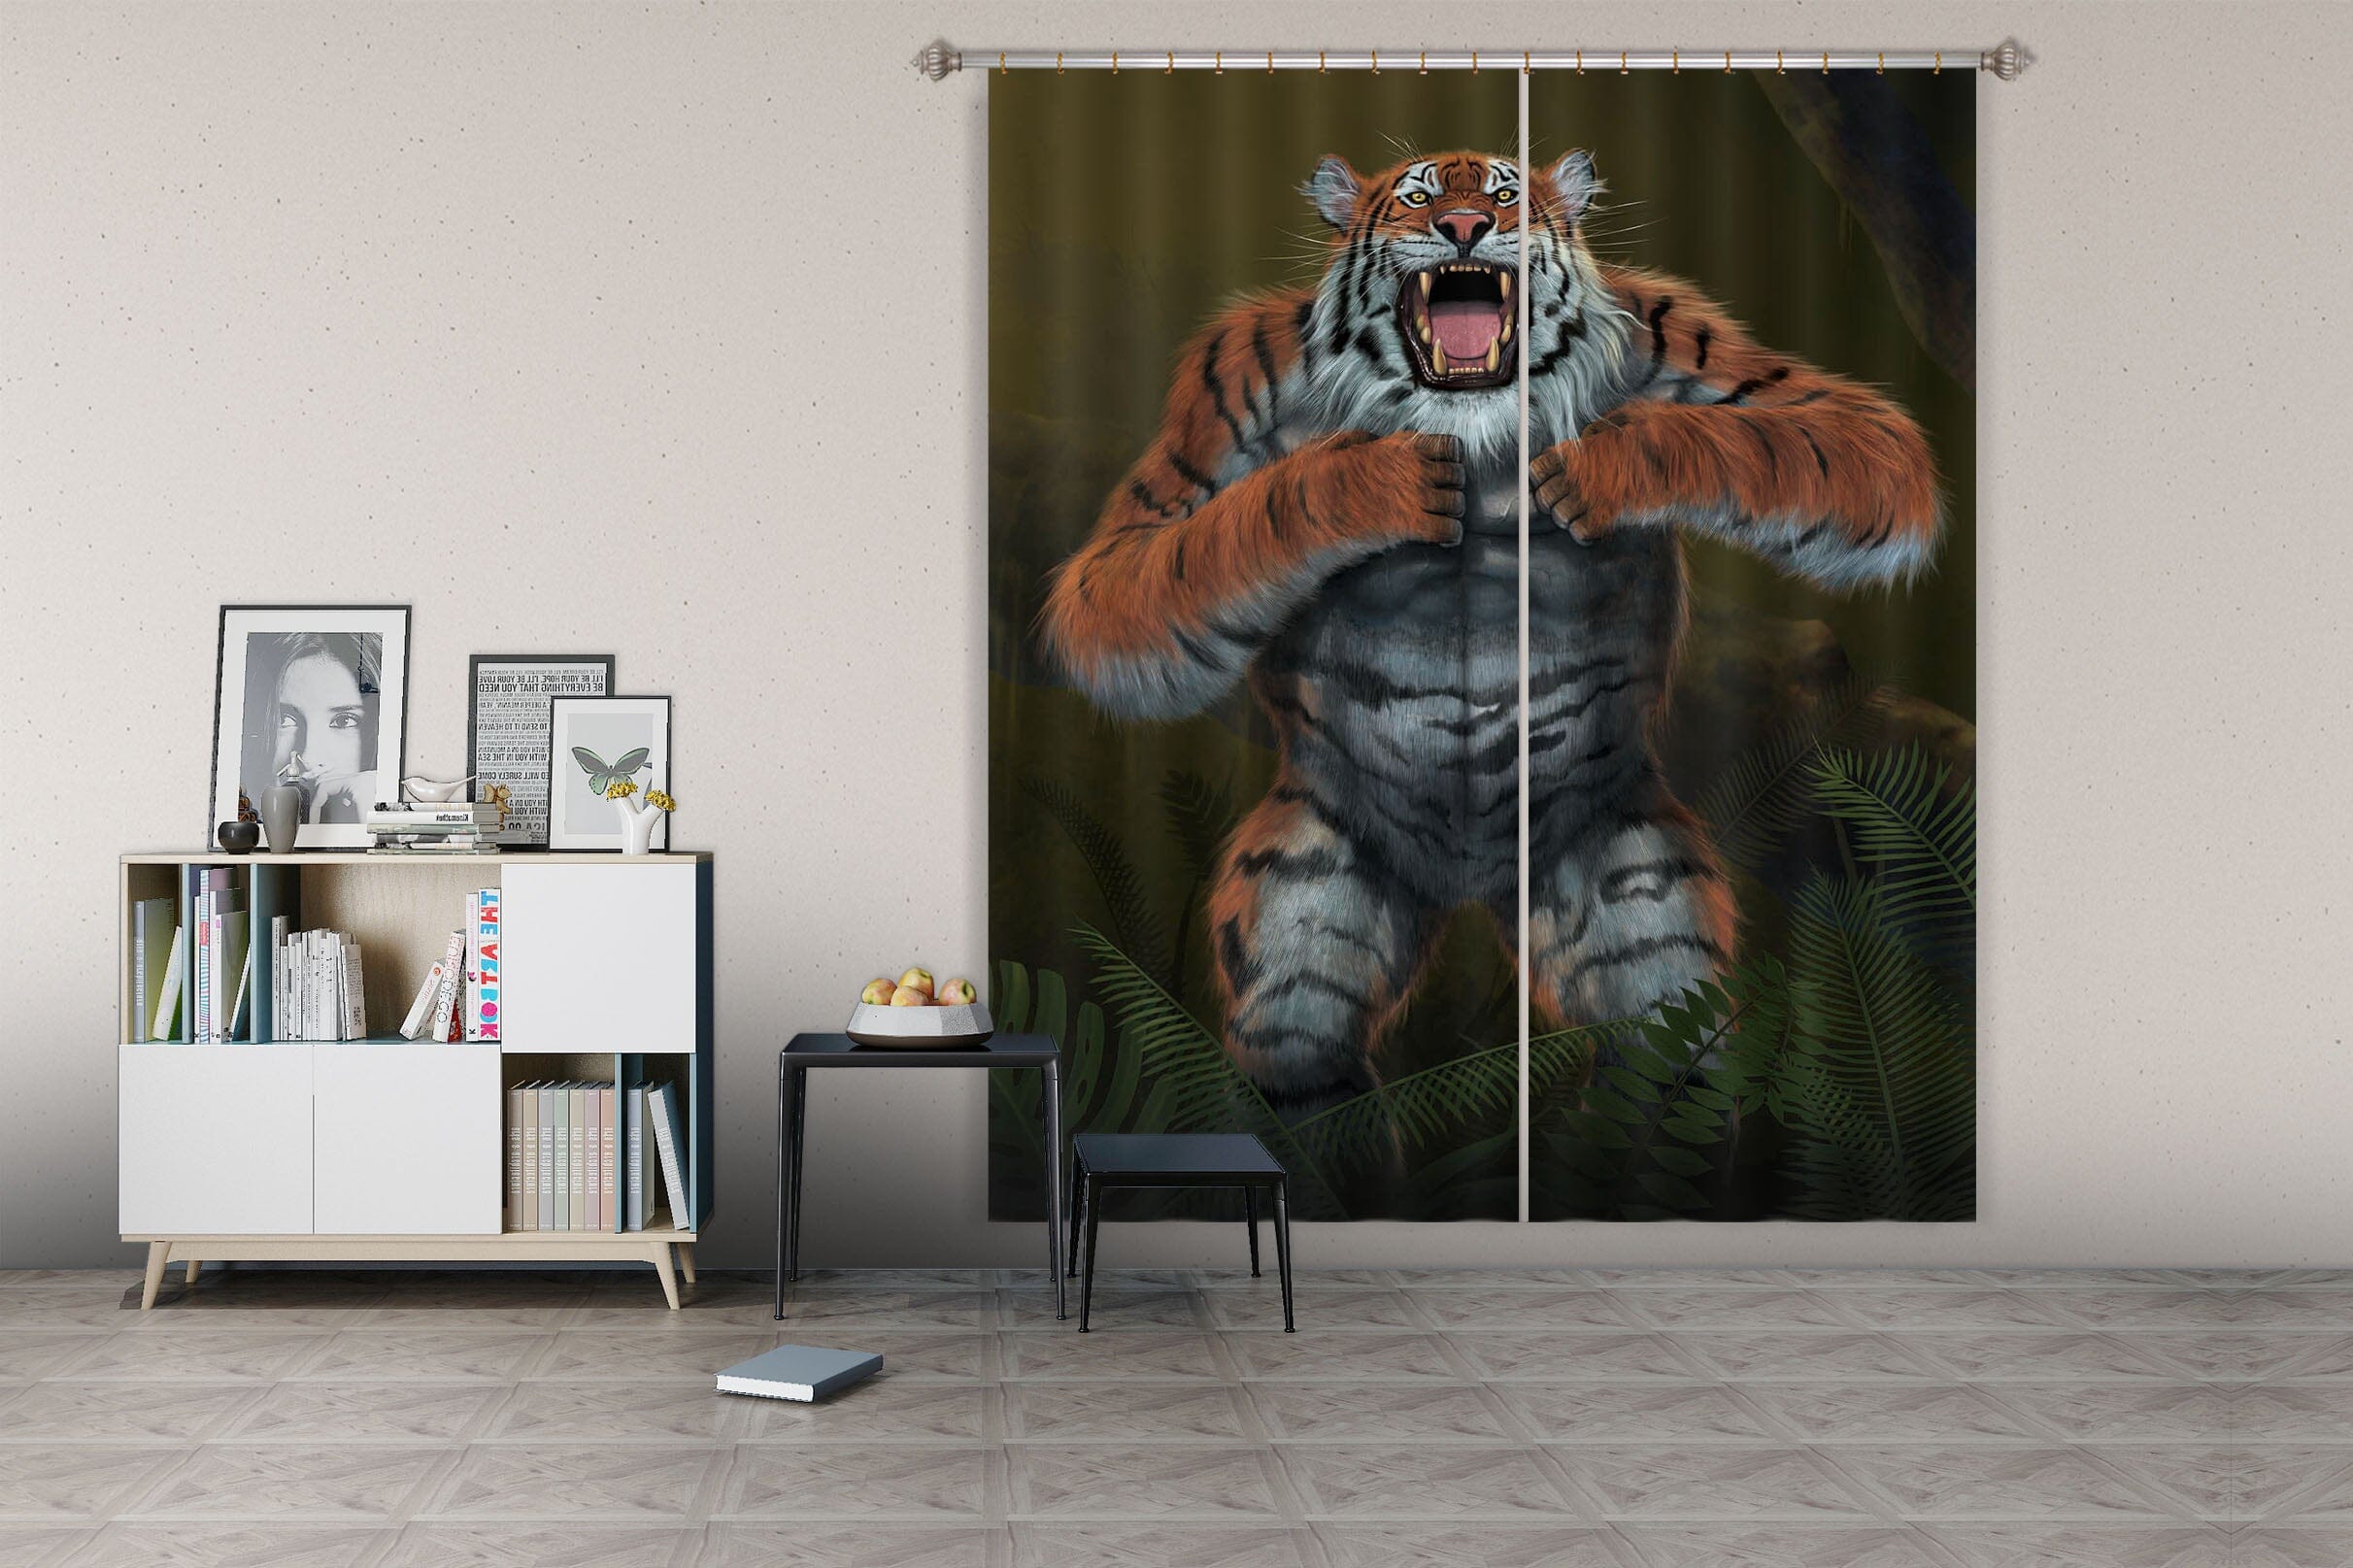 3D Tigerilla 081 Vincent Hie Curtain Curtains Drapes Curtains AJ Creativity Home 